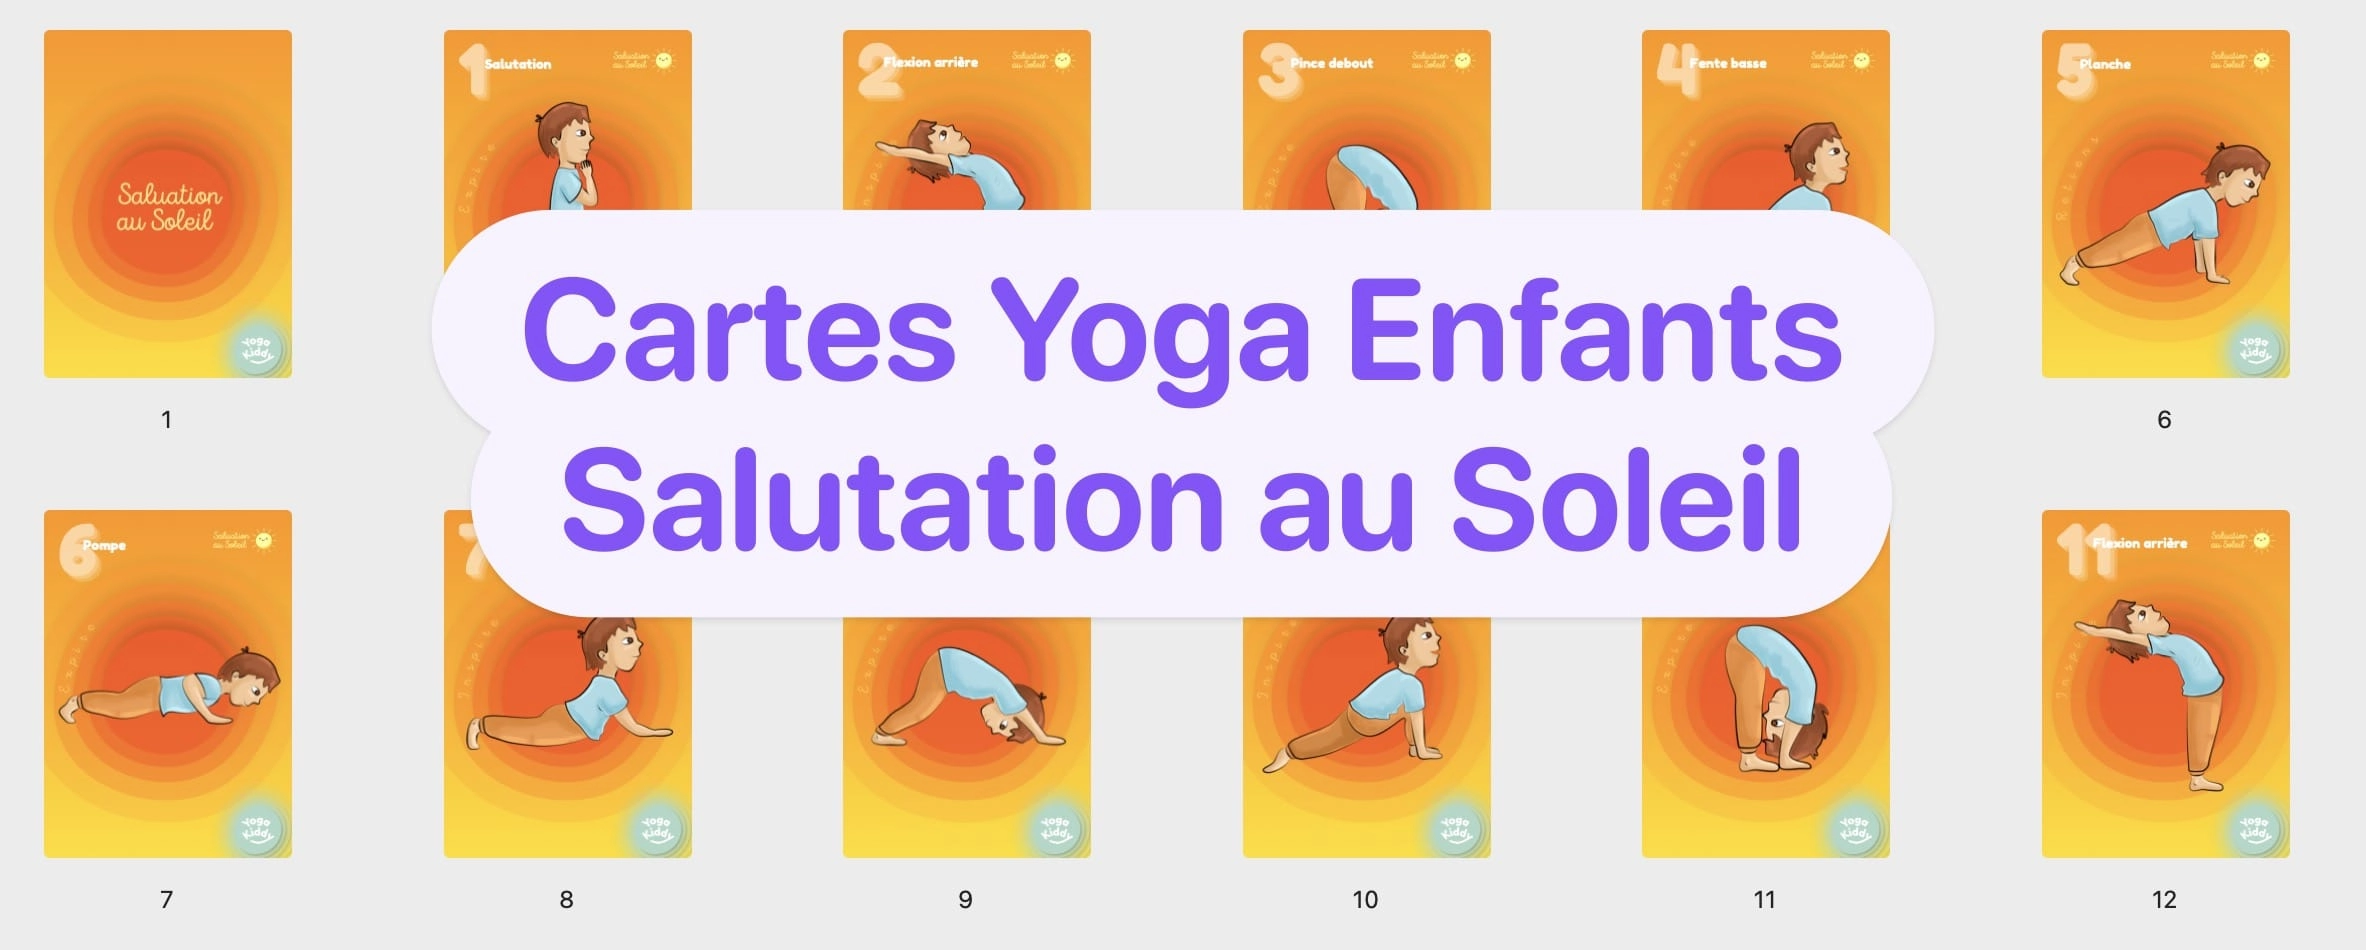 Cartes Yoga Enfants Salutation au Soleil Télécharger Gratuit Imprimer